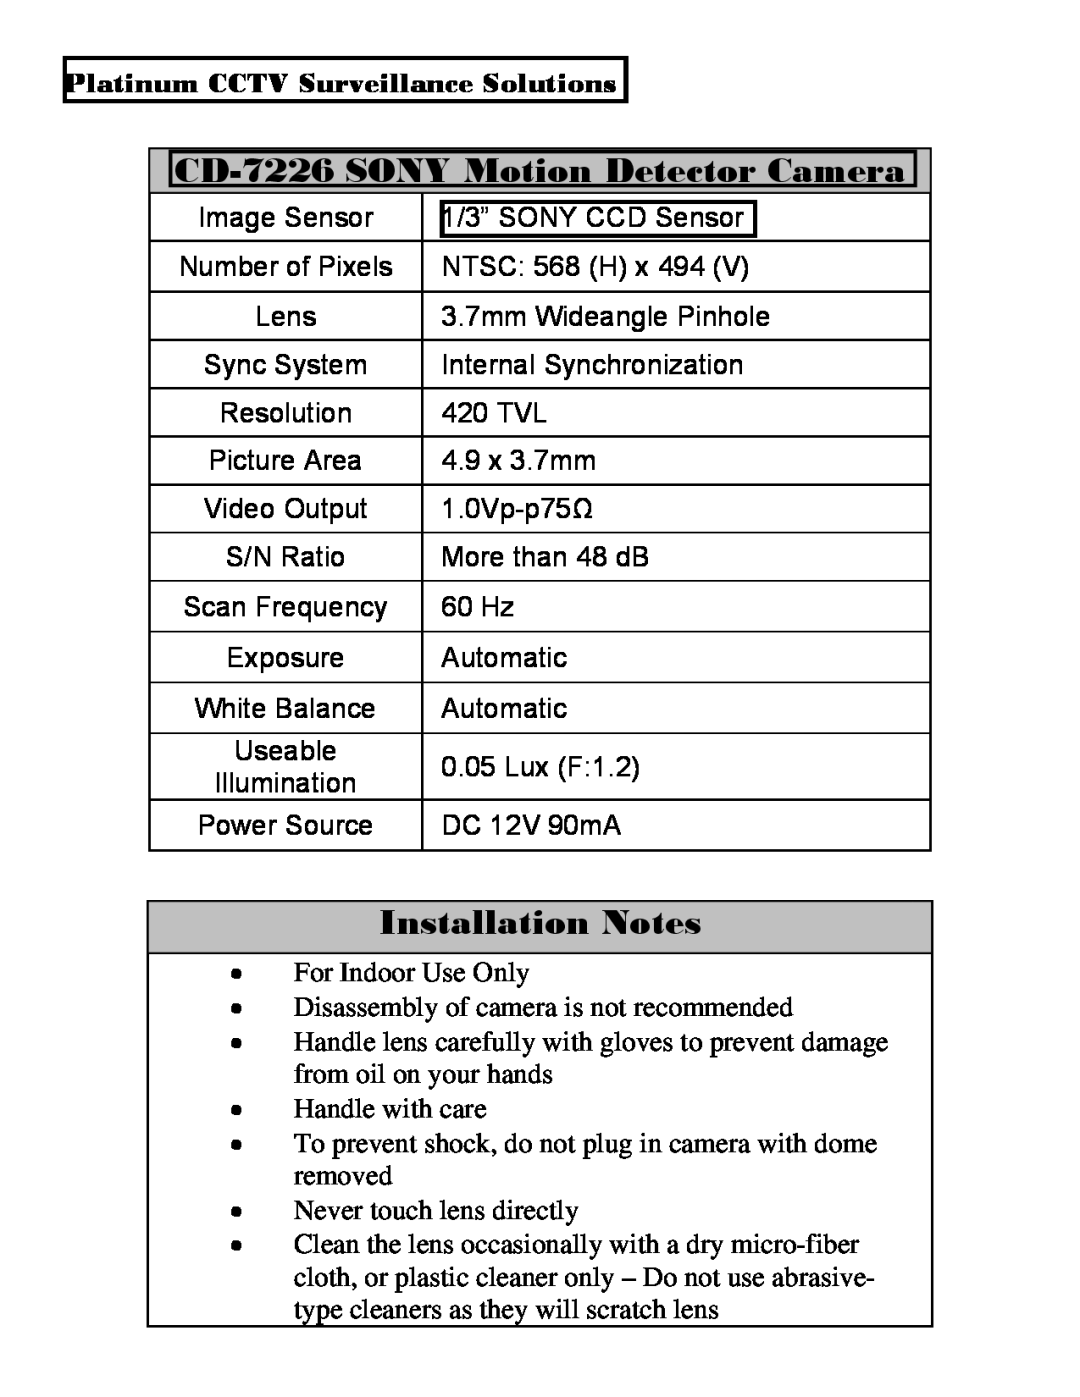 Sony installation manual CD-7226SONY Motion Detector Camera, Installation Notes, Platinum CCTV Surveillance Solutions 